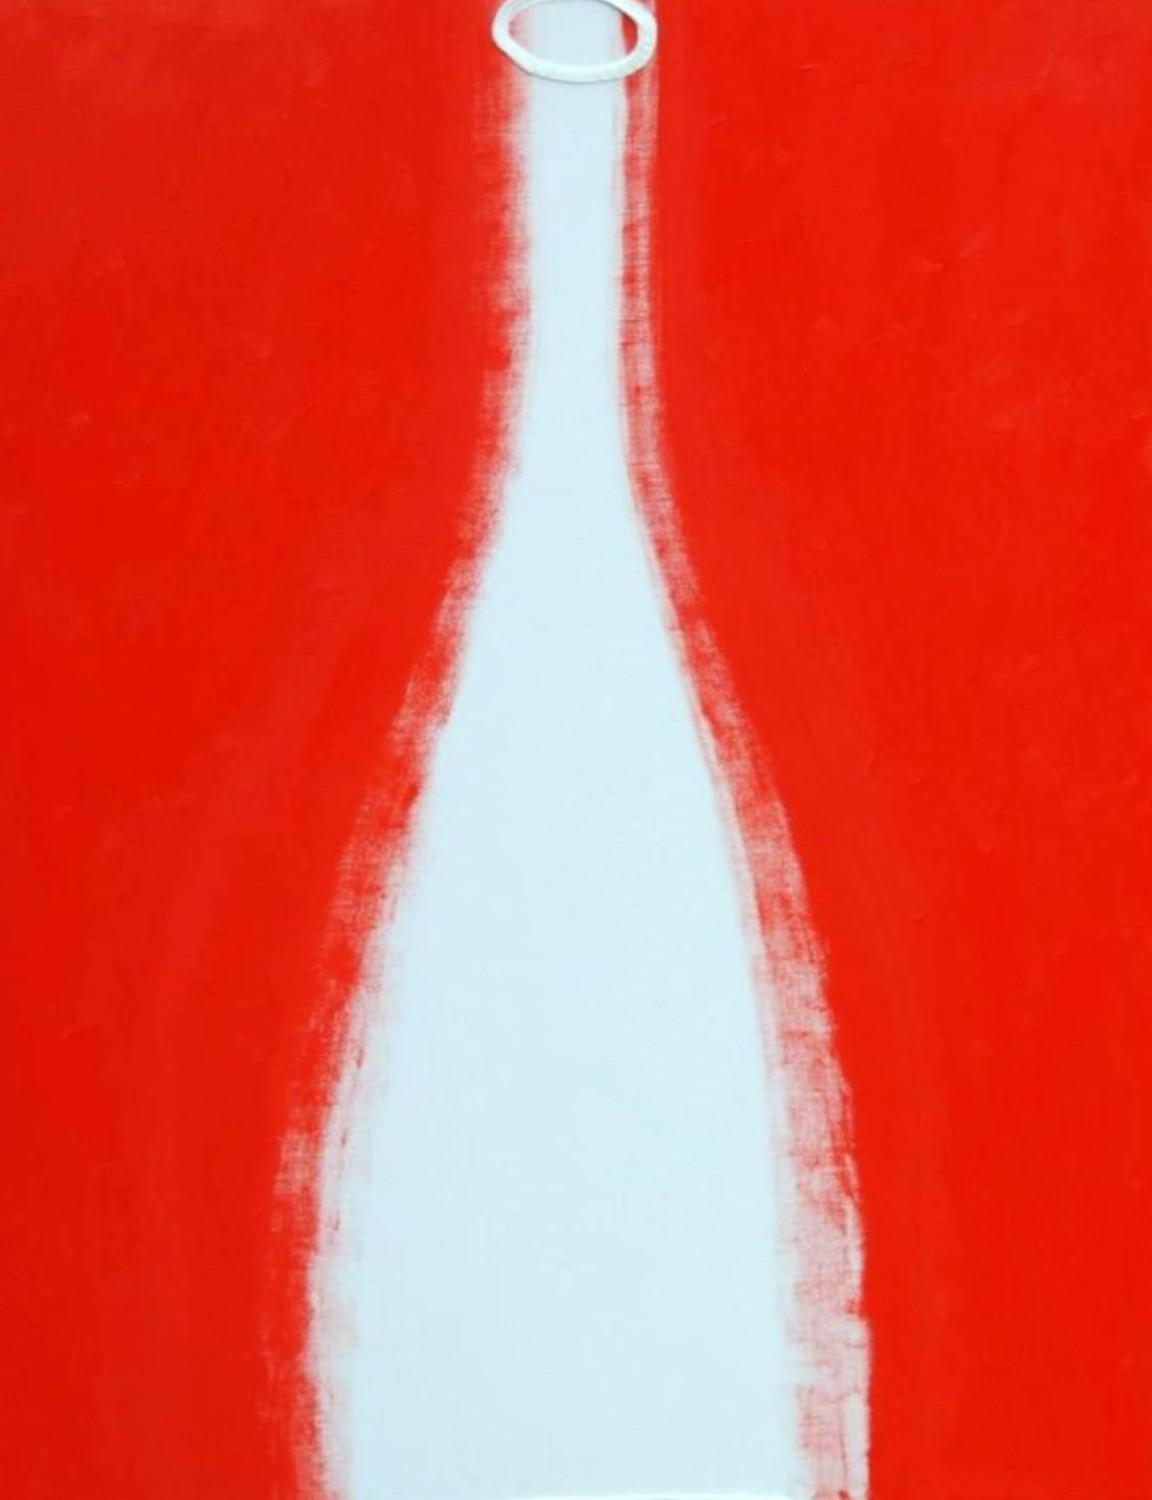 Бутылка. Петр Бронфин. 2008, холст, масло, 120x180